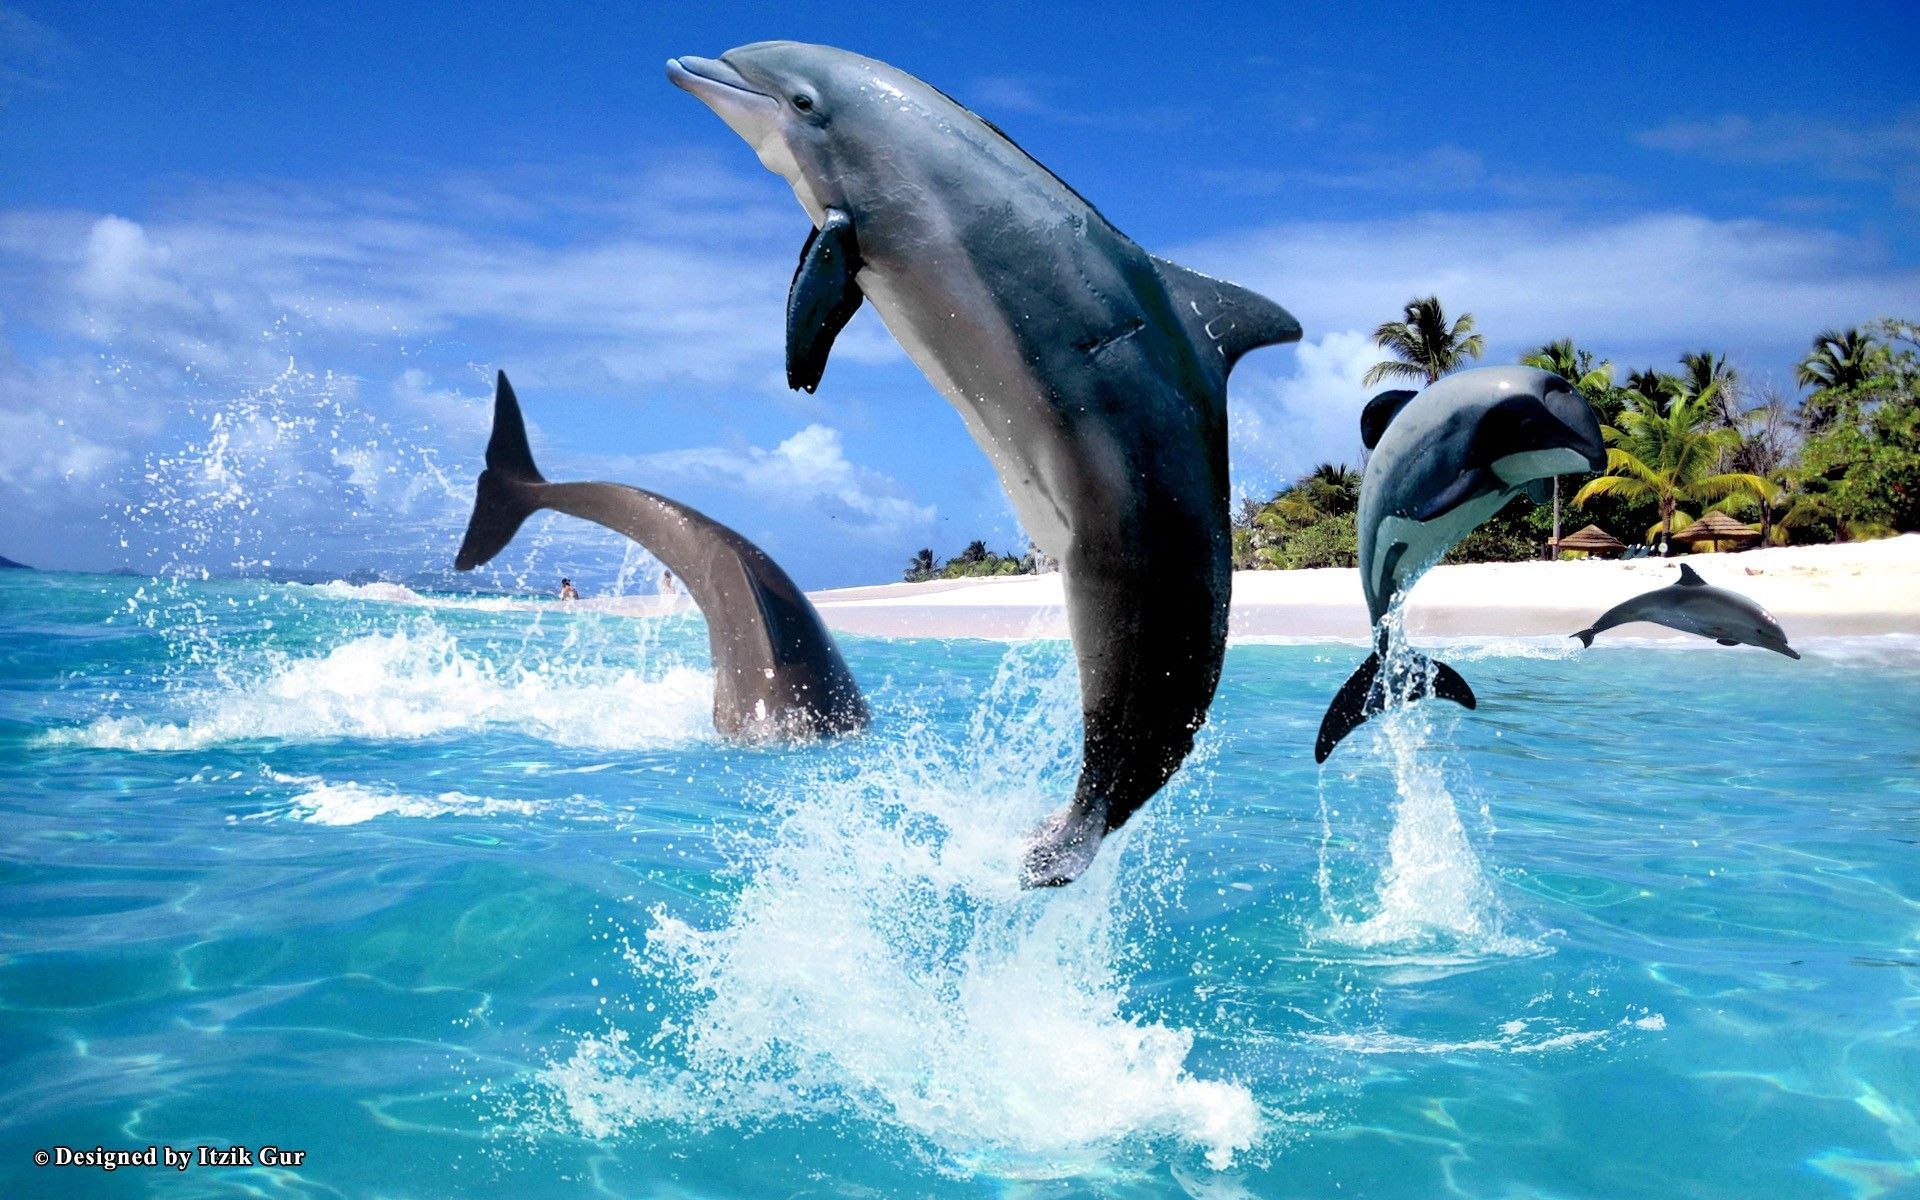 Hình nền Dolphin sẽ đưa bạn vào thế giới biển xanh bao la, với con cá heo thông minh và đáng yêu. Hãy cùng thấy lòng ấm áp và thư giãn với hình ảnh này. Hãy cắm mắt vào màn hình và cùng thưởng thức.